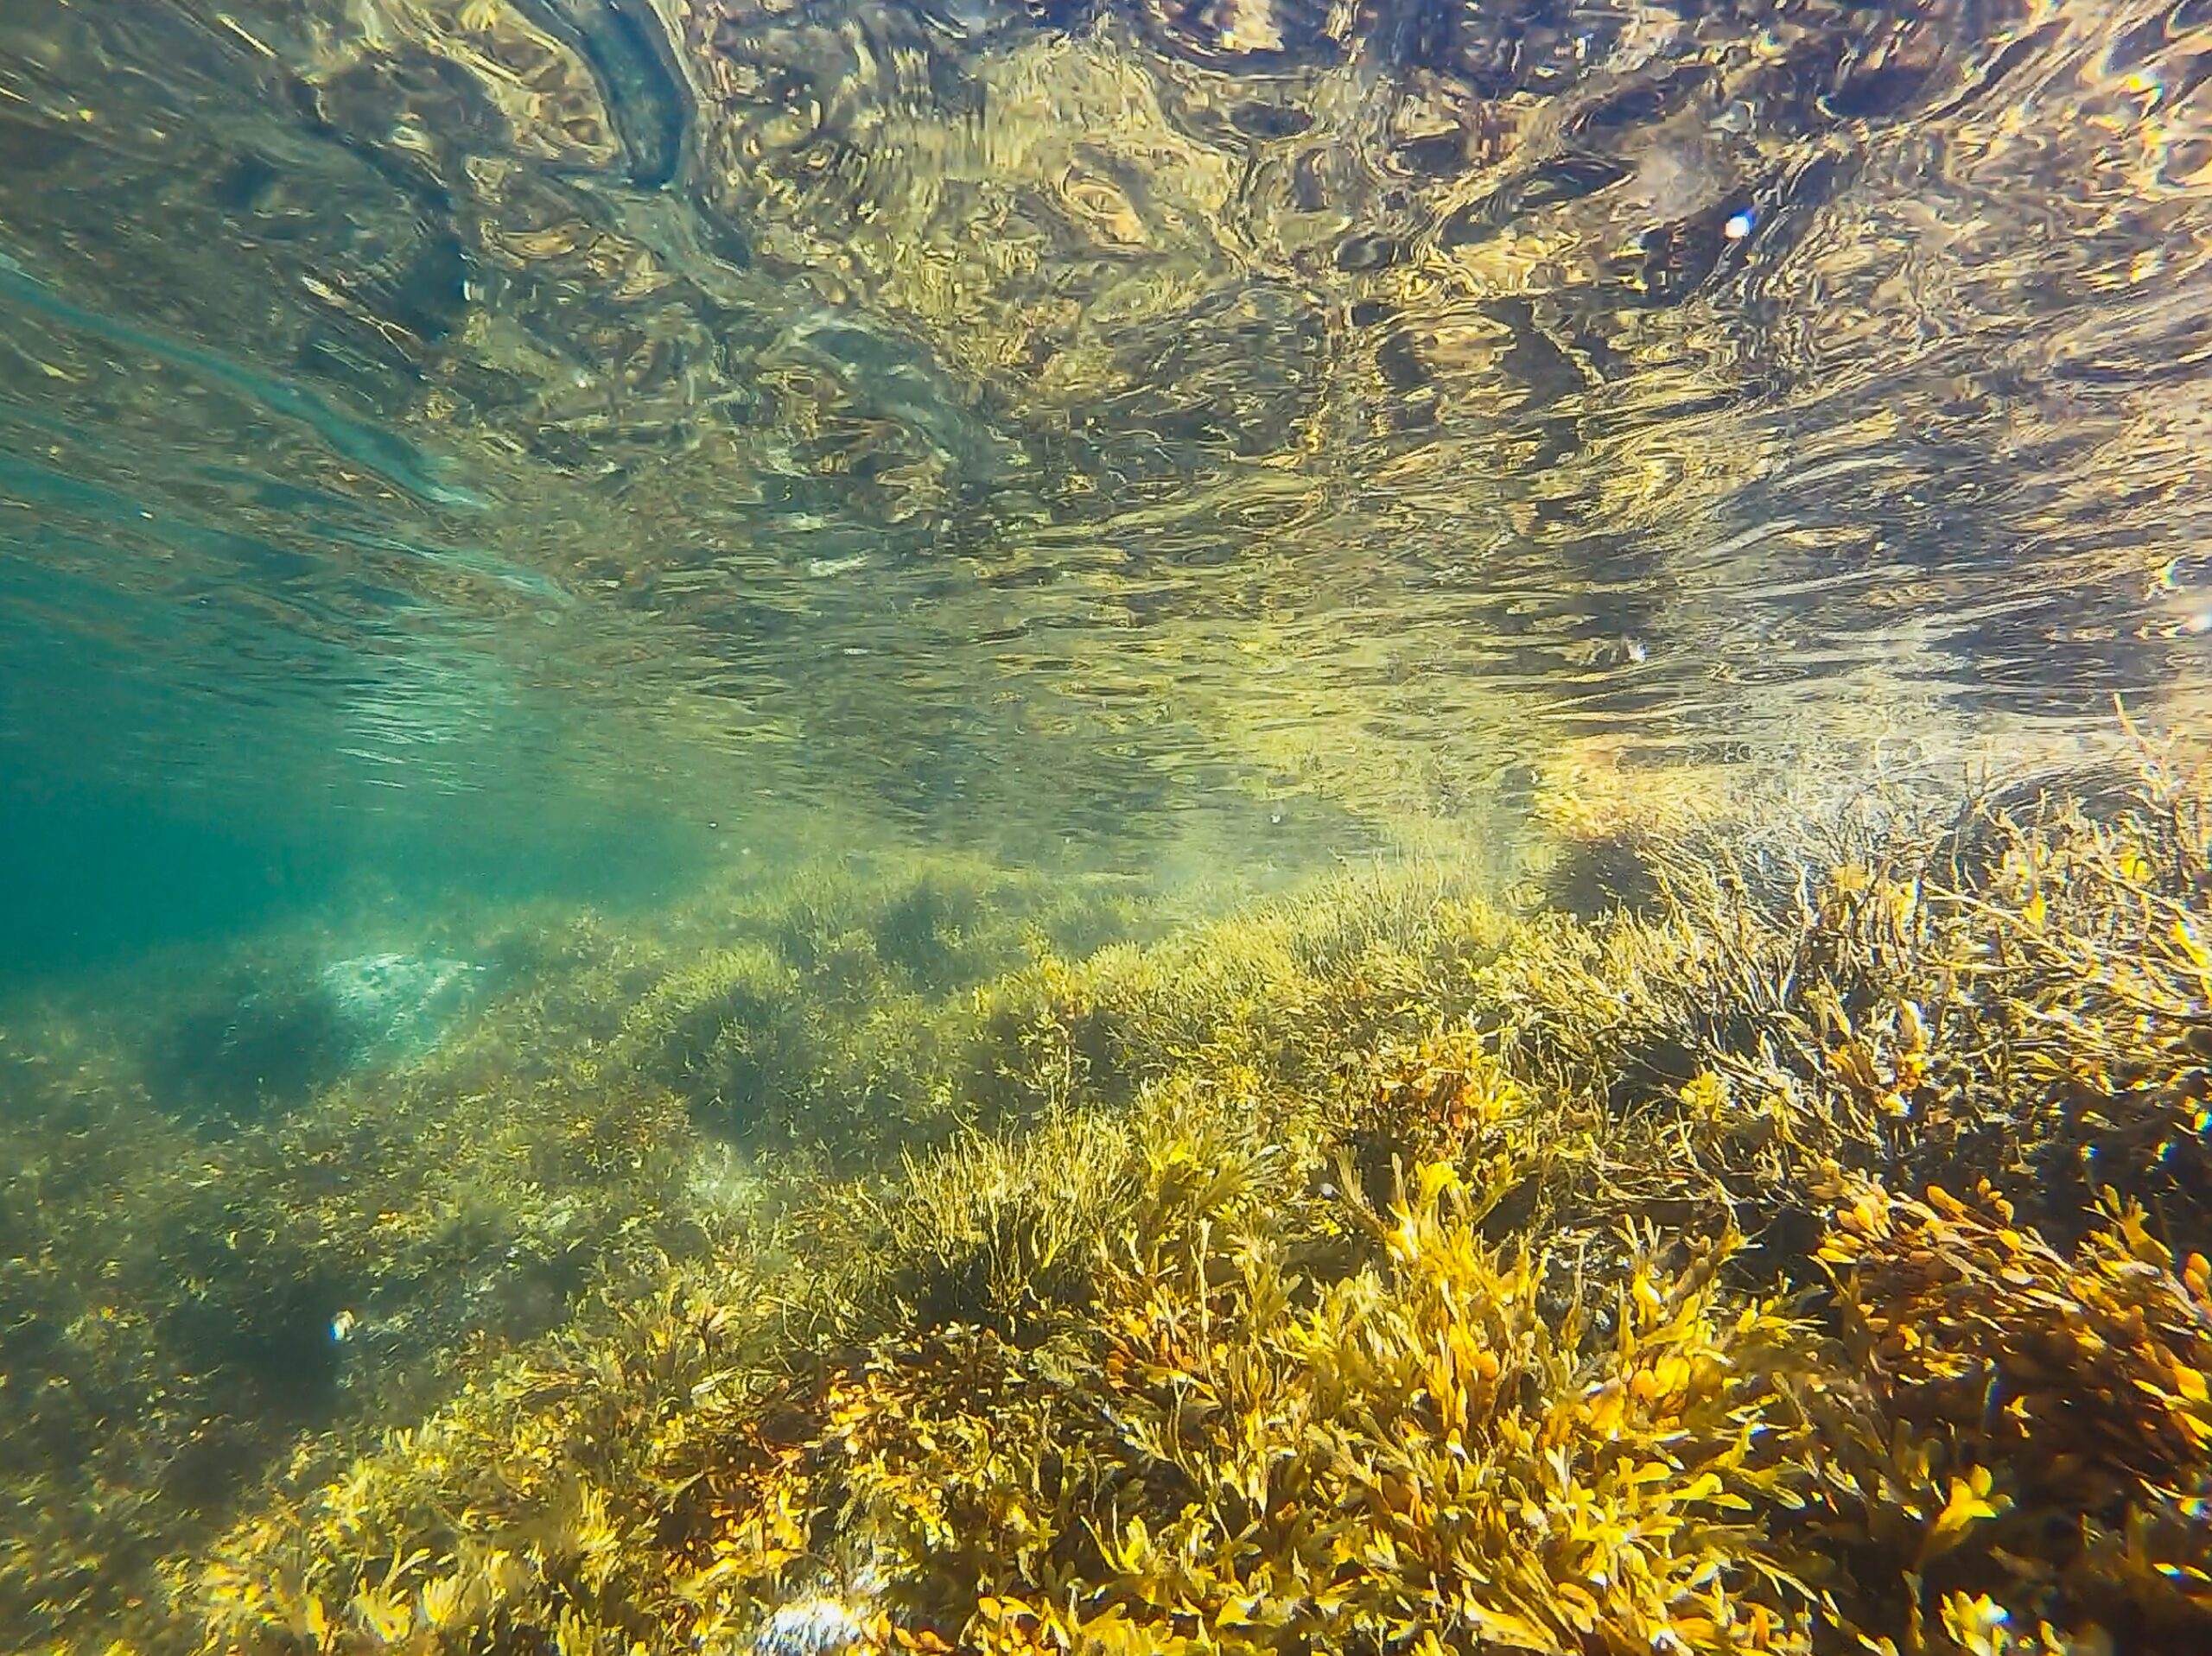 Seegras am Meeresboden knapp unter der Wasseroberfläche